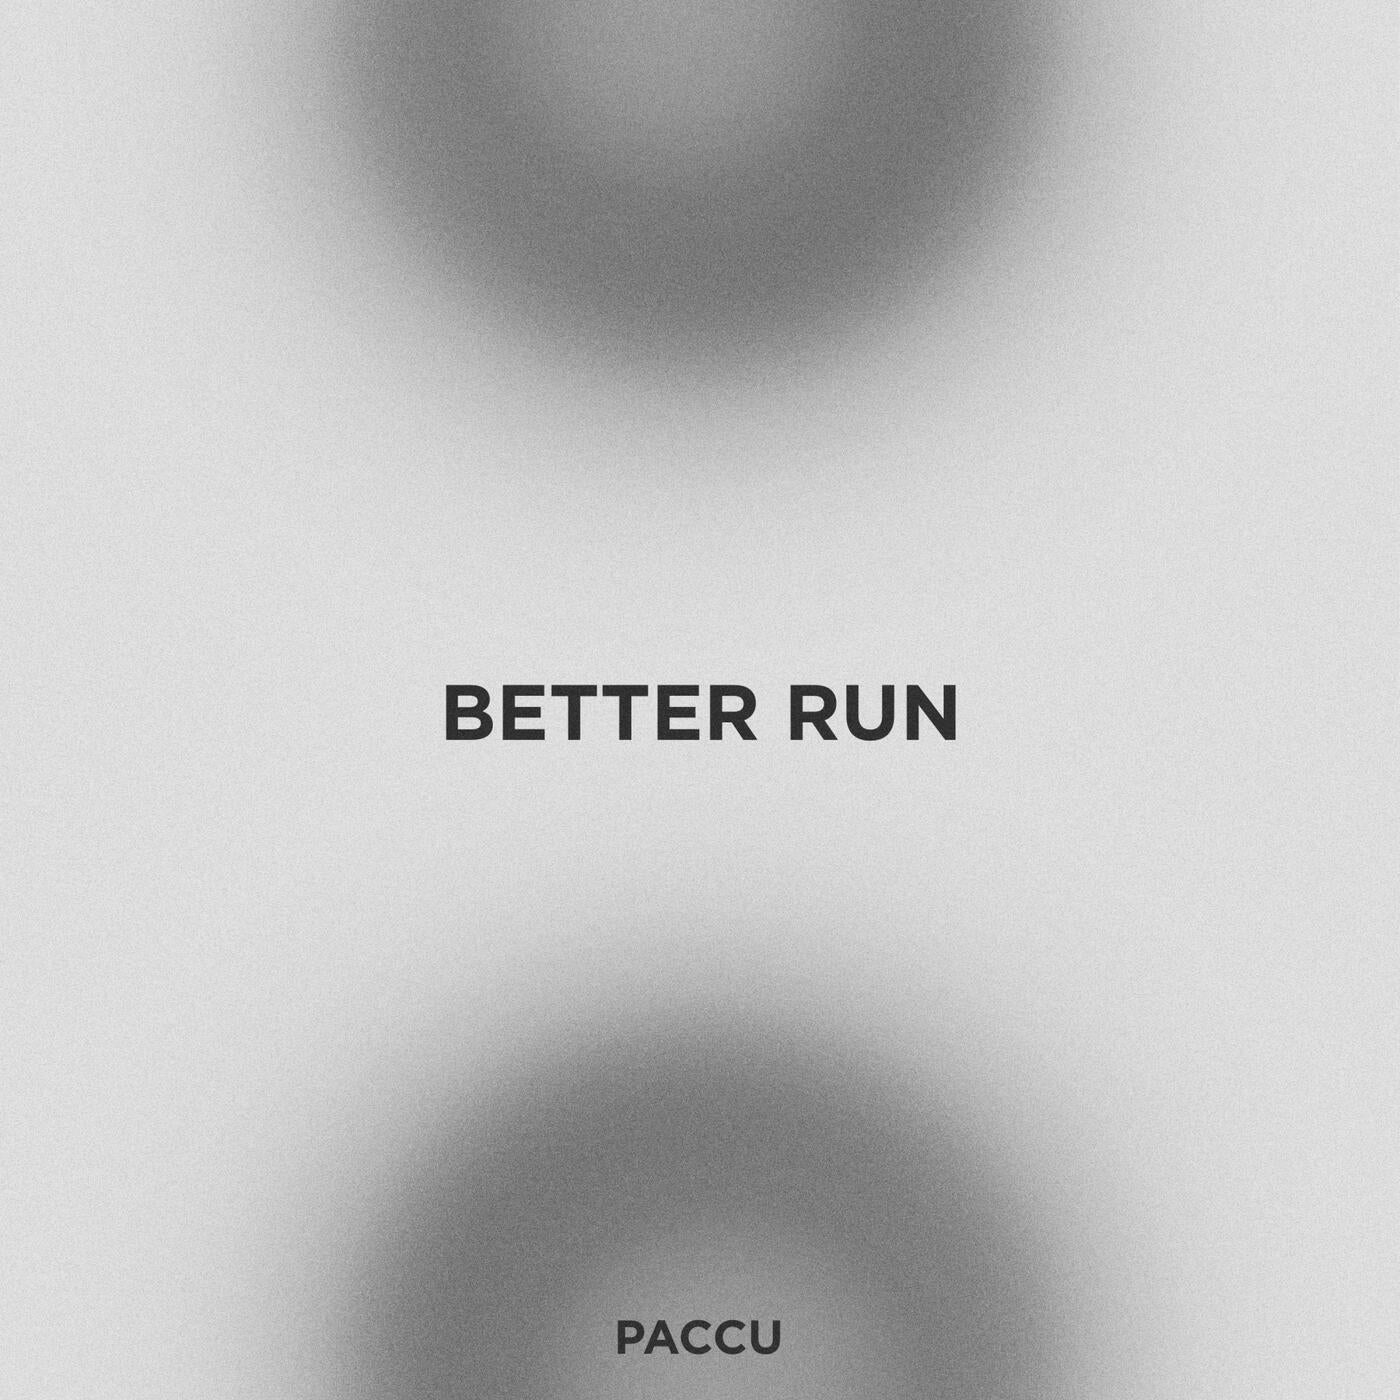 Better Run (Extended Mix)